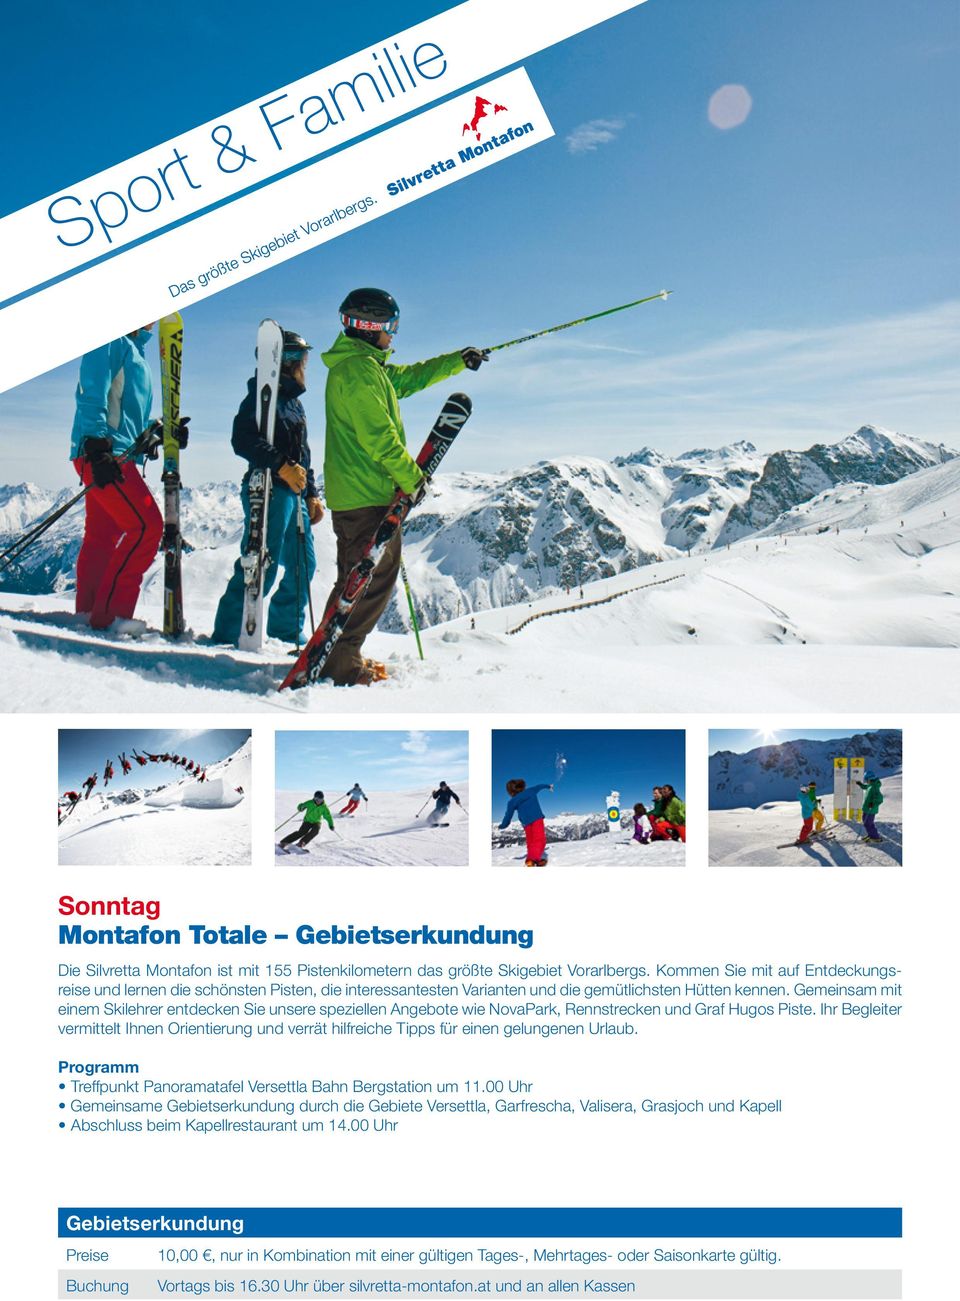 Gemeinsam mit einem Skilehrer entdecken Sie unsere speziellen Angebote wie NovaPark, Rennstrecken und Graf Hugos Piste.